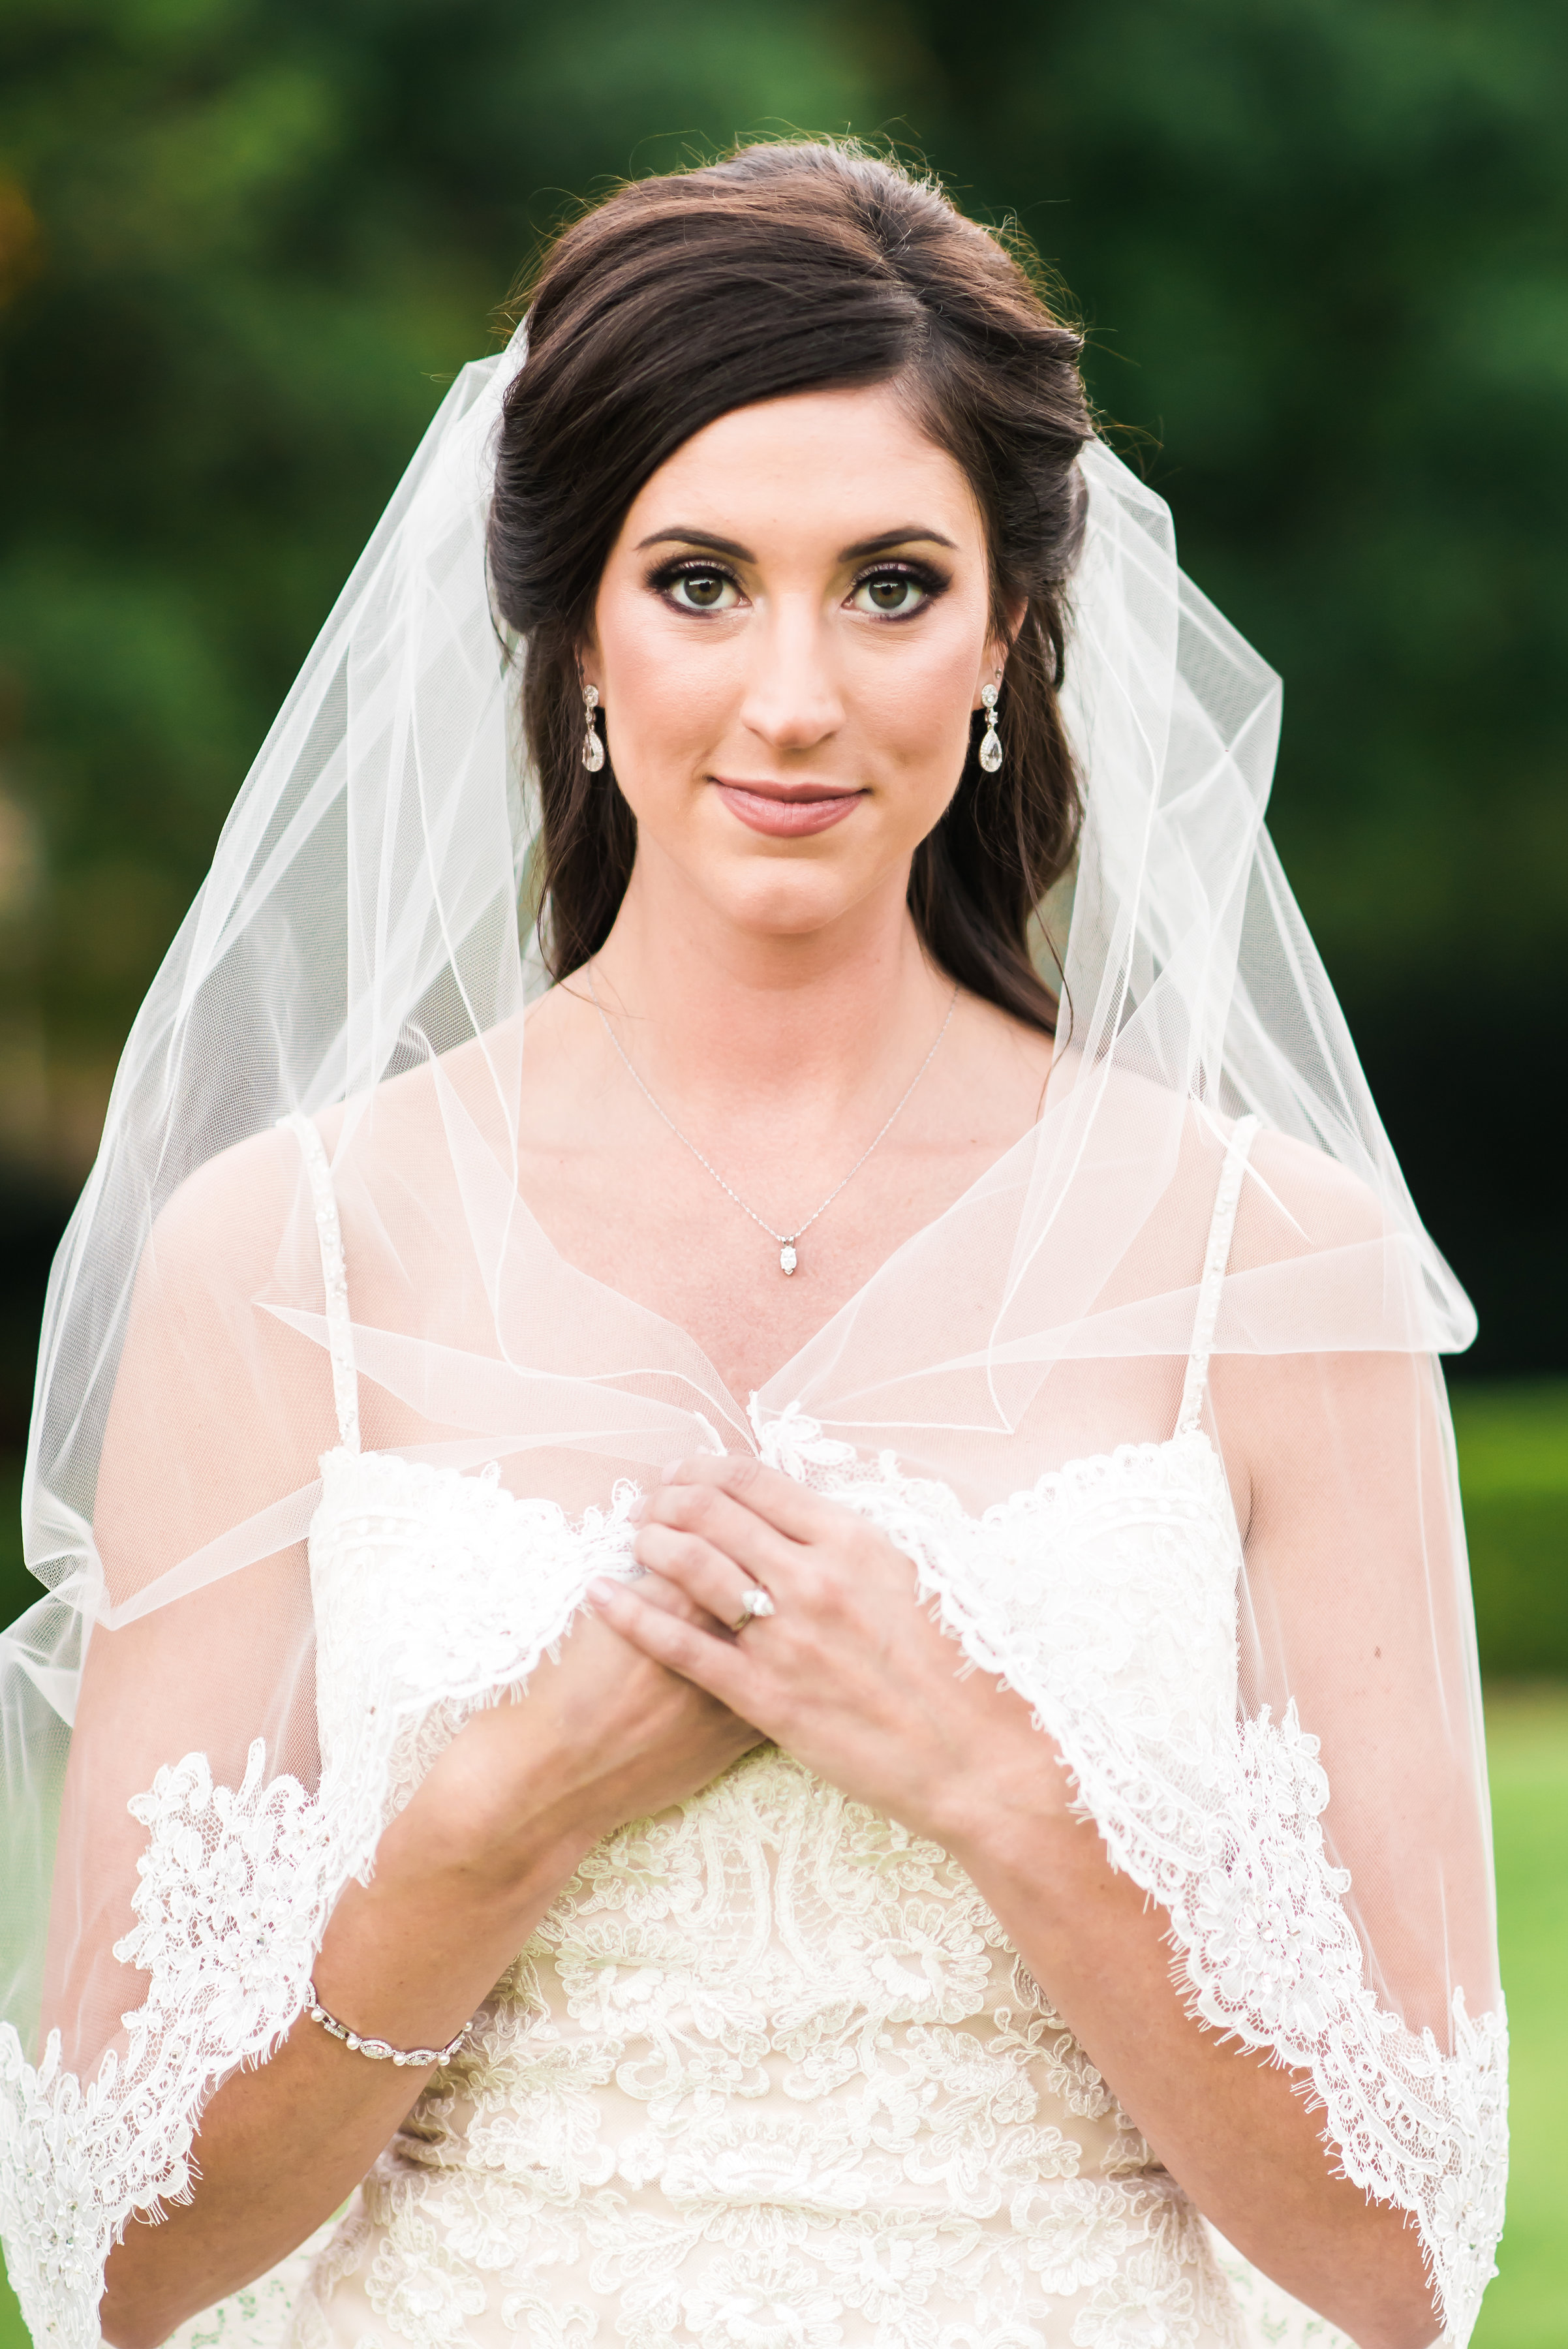 DFW Wedding: Morgan's Bridal Portraits | A Stylish Soiree, Wedding Planner